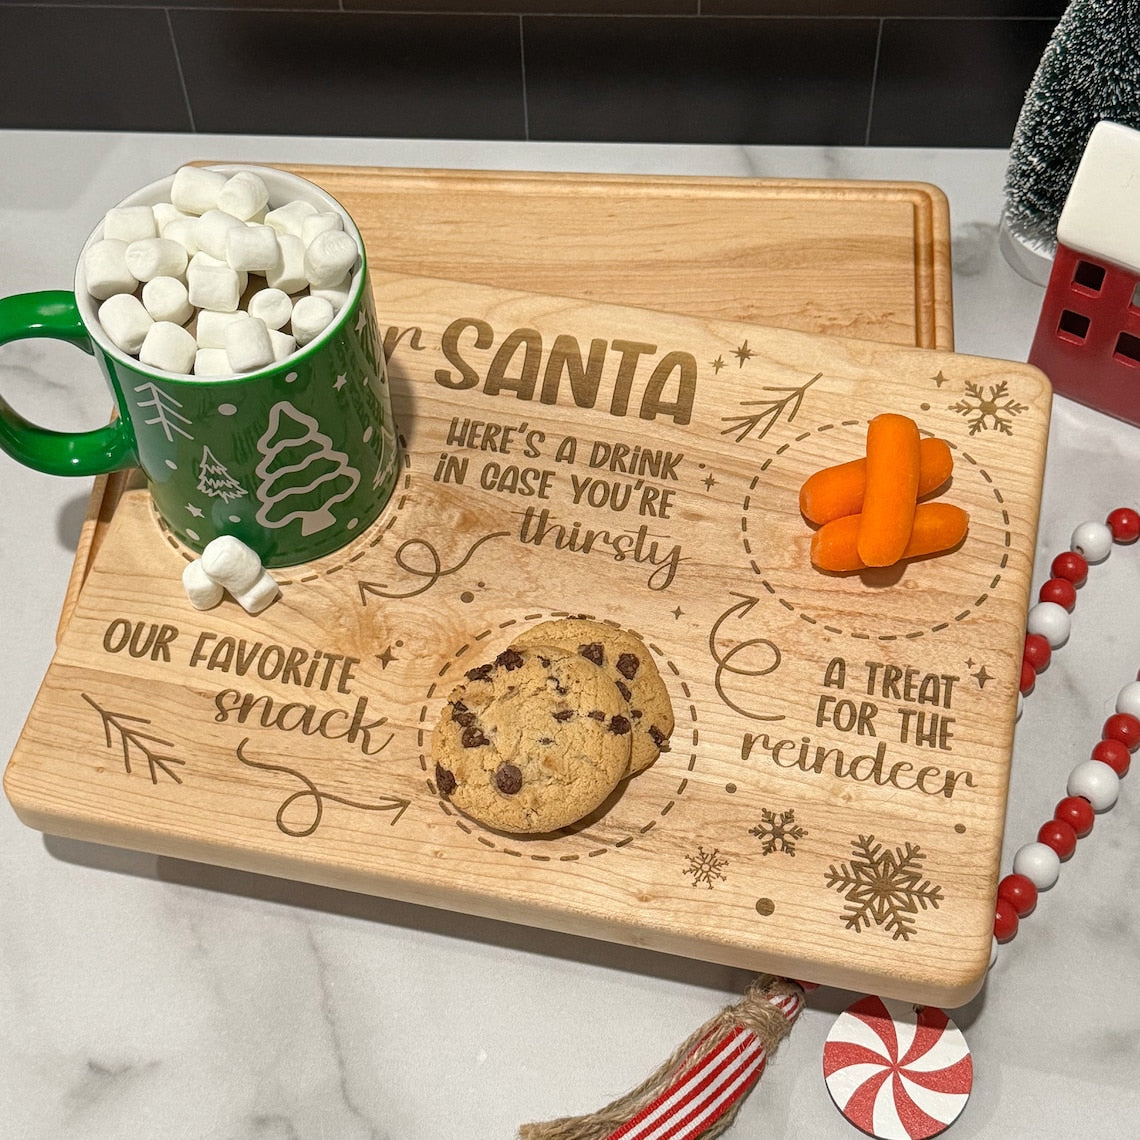 A wooden Santa Tray / Cutting Board with a santa mug and cookies.